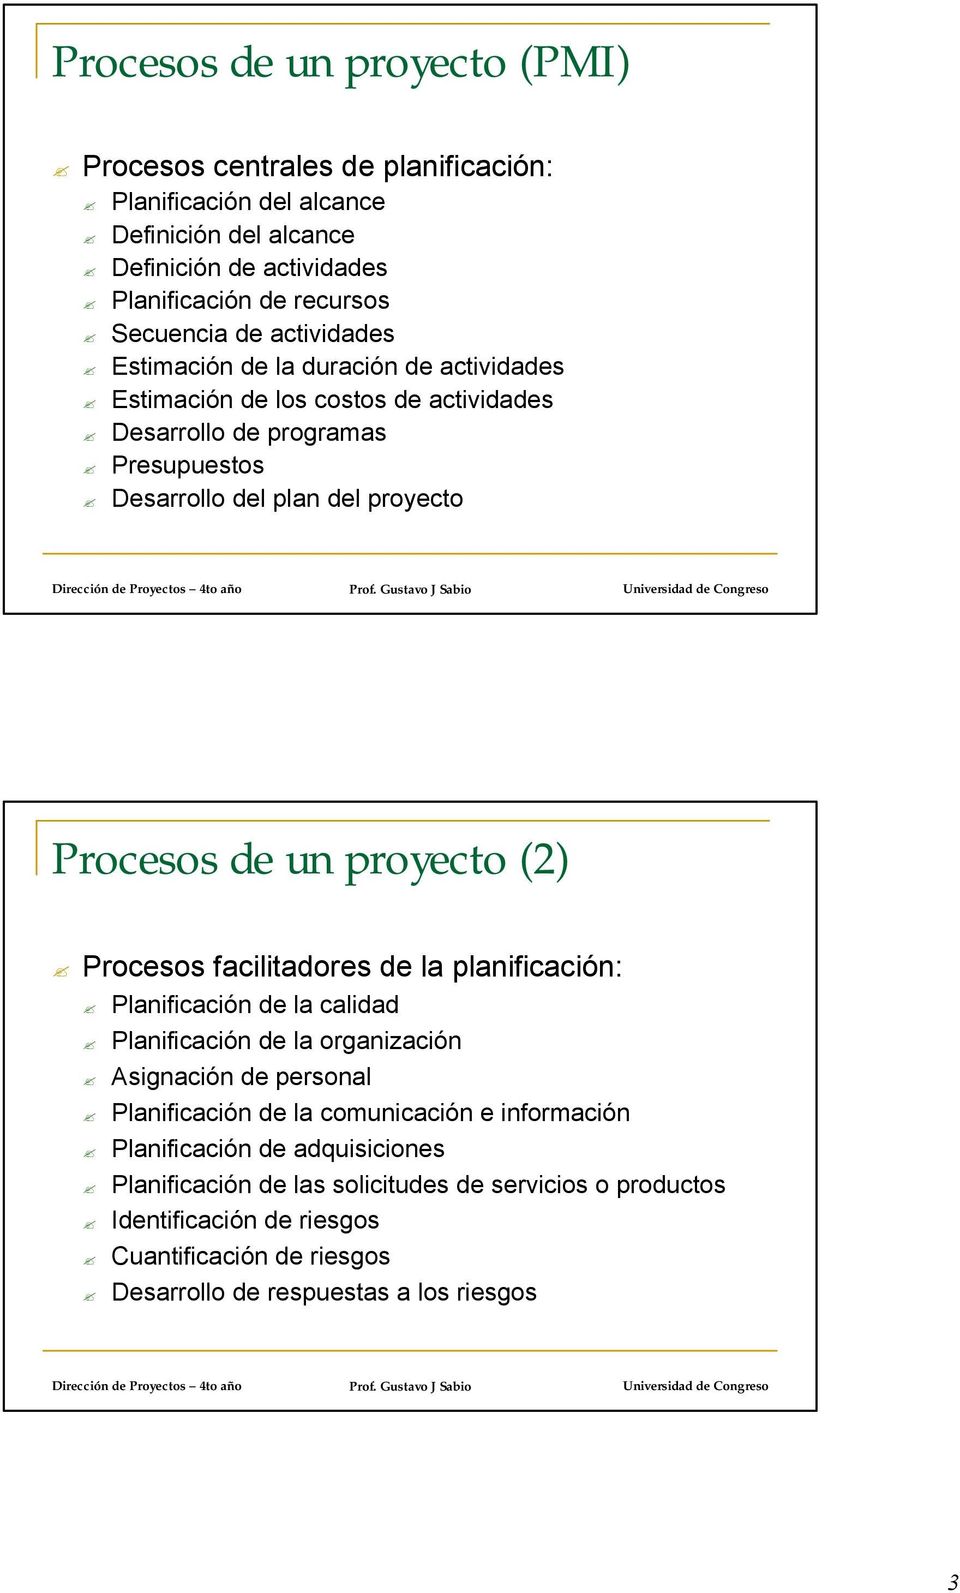 proyecto (2) facilitadores de la planificación: Planificación de la calidad Planificación de la organización Asignación de personal Planificación de la comunicación e